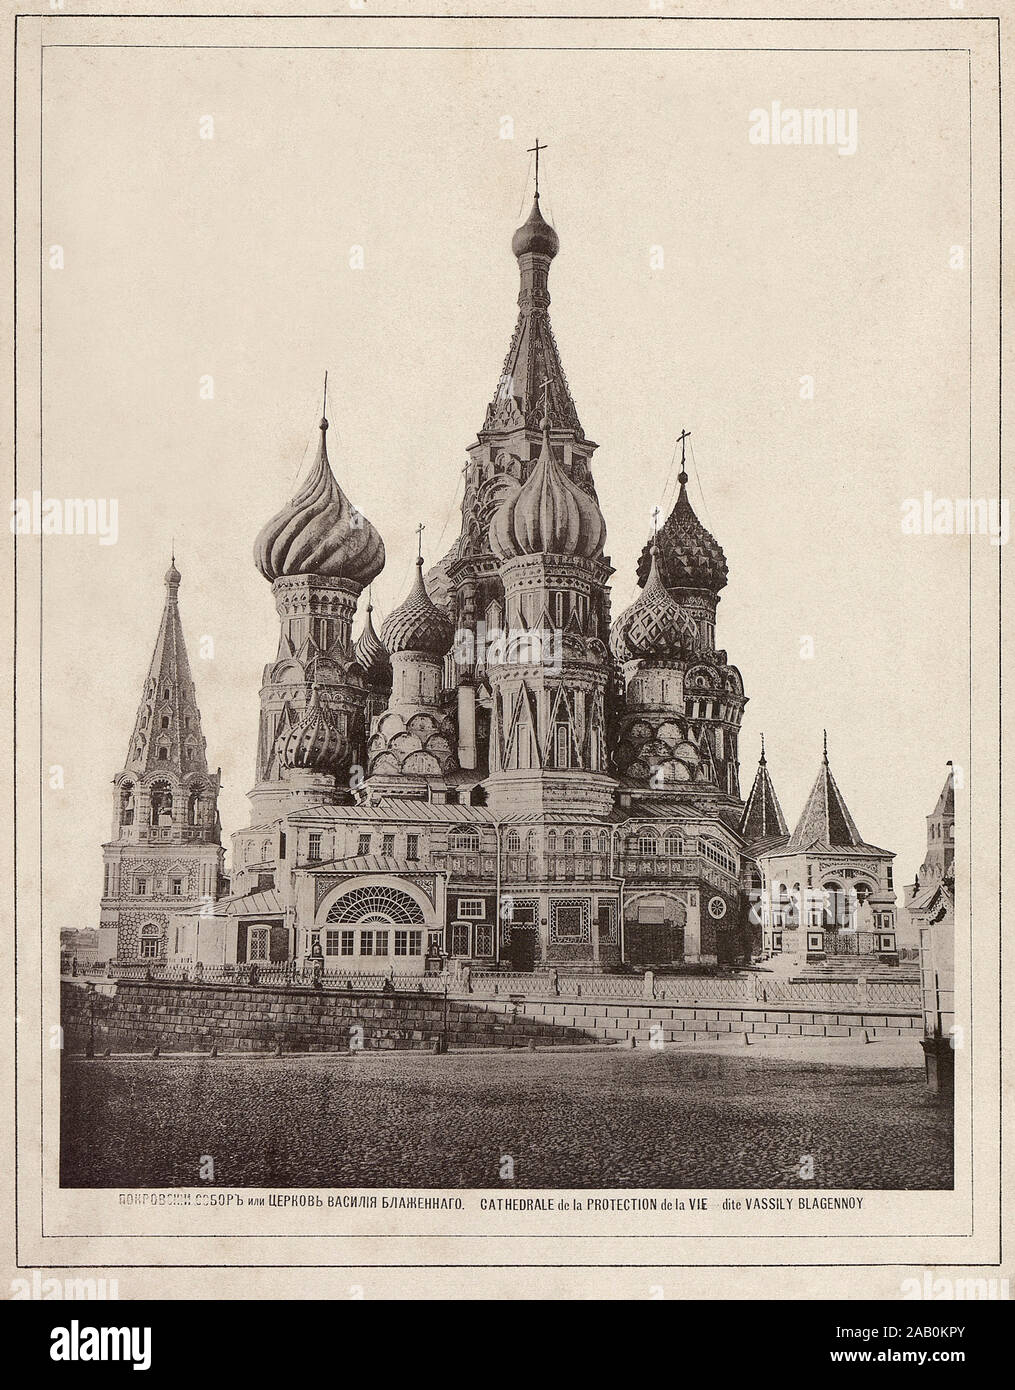 Vue sur le Kremlin de Moscou, la cathédrale Saint-Basile (la cathédrale de Vasily la sainte). 19e siècle, l'Empire russe, Moscou Banque D'Images